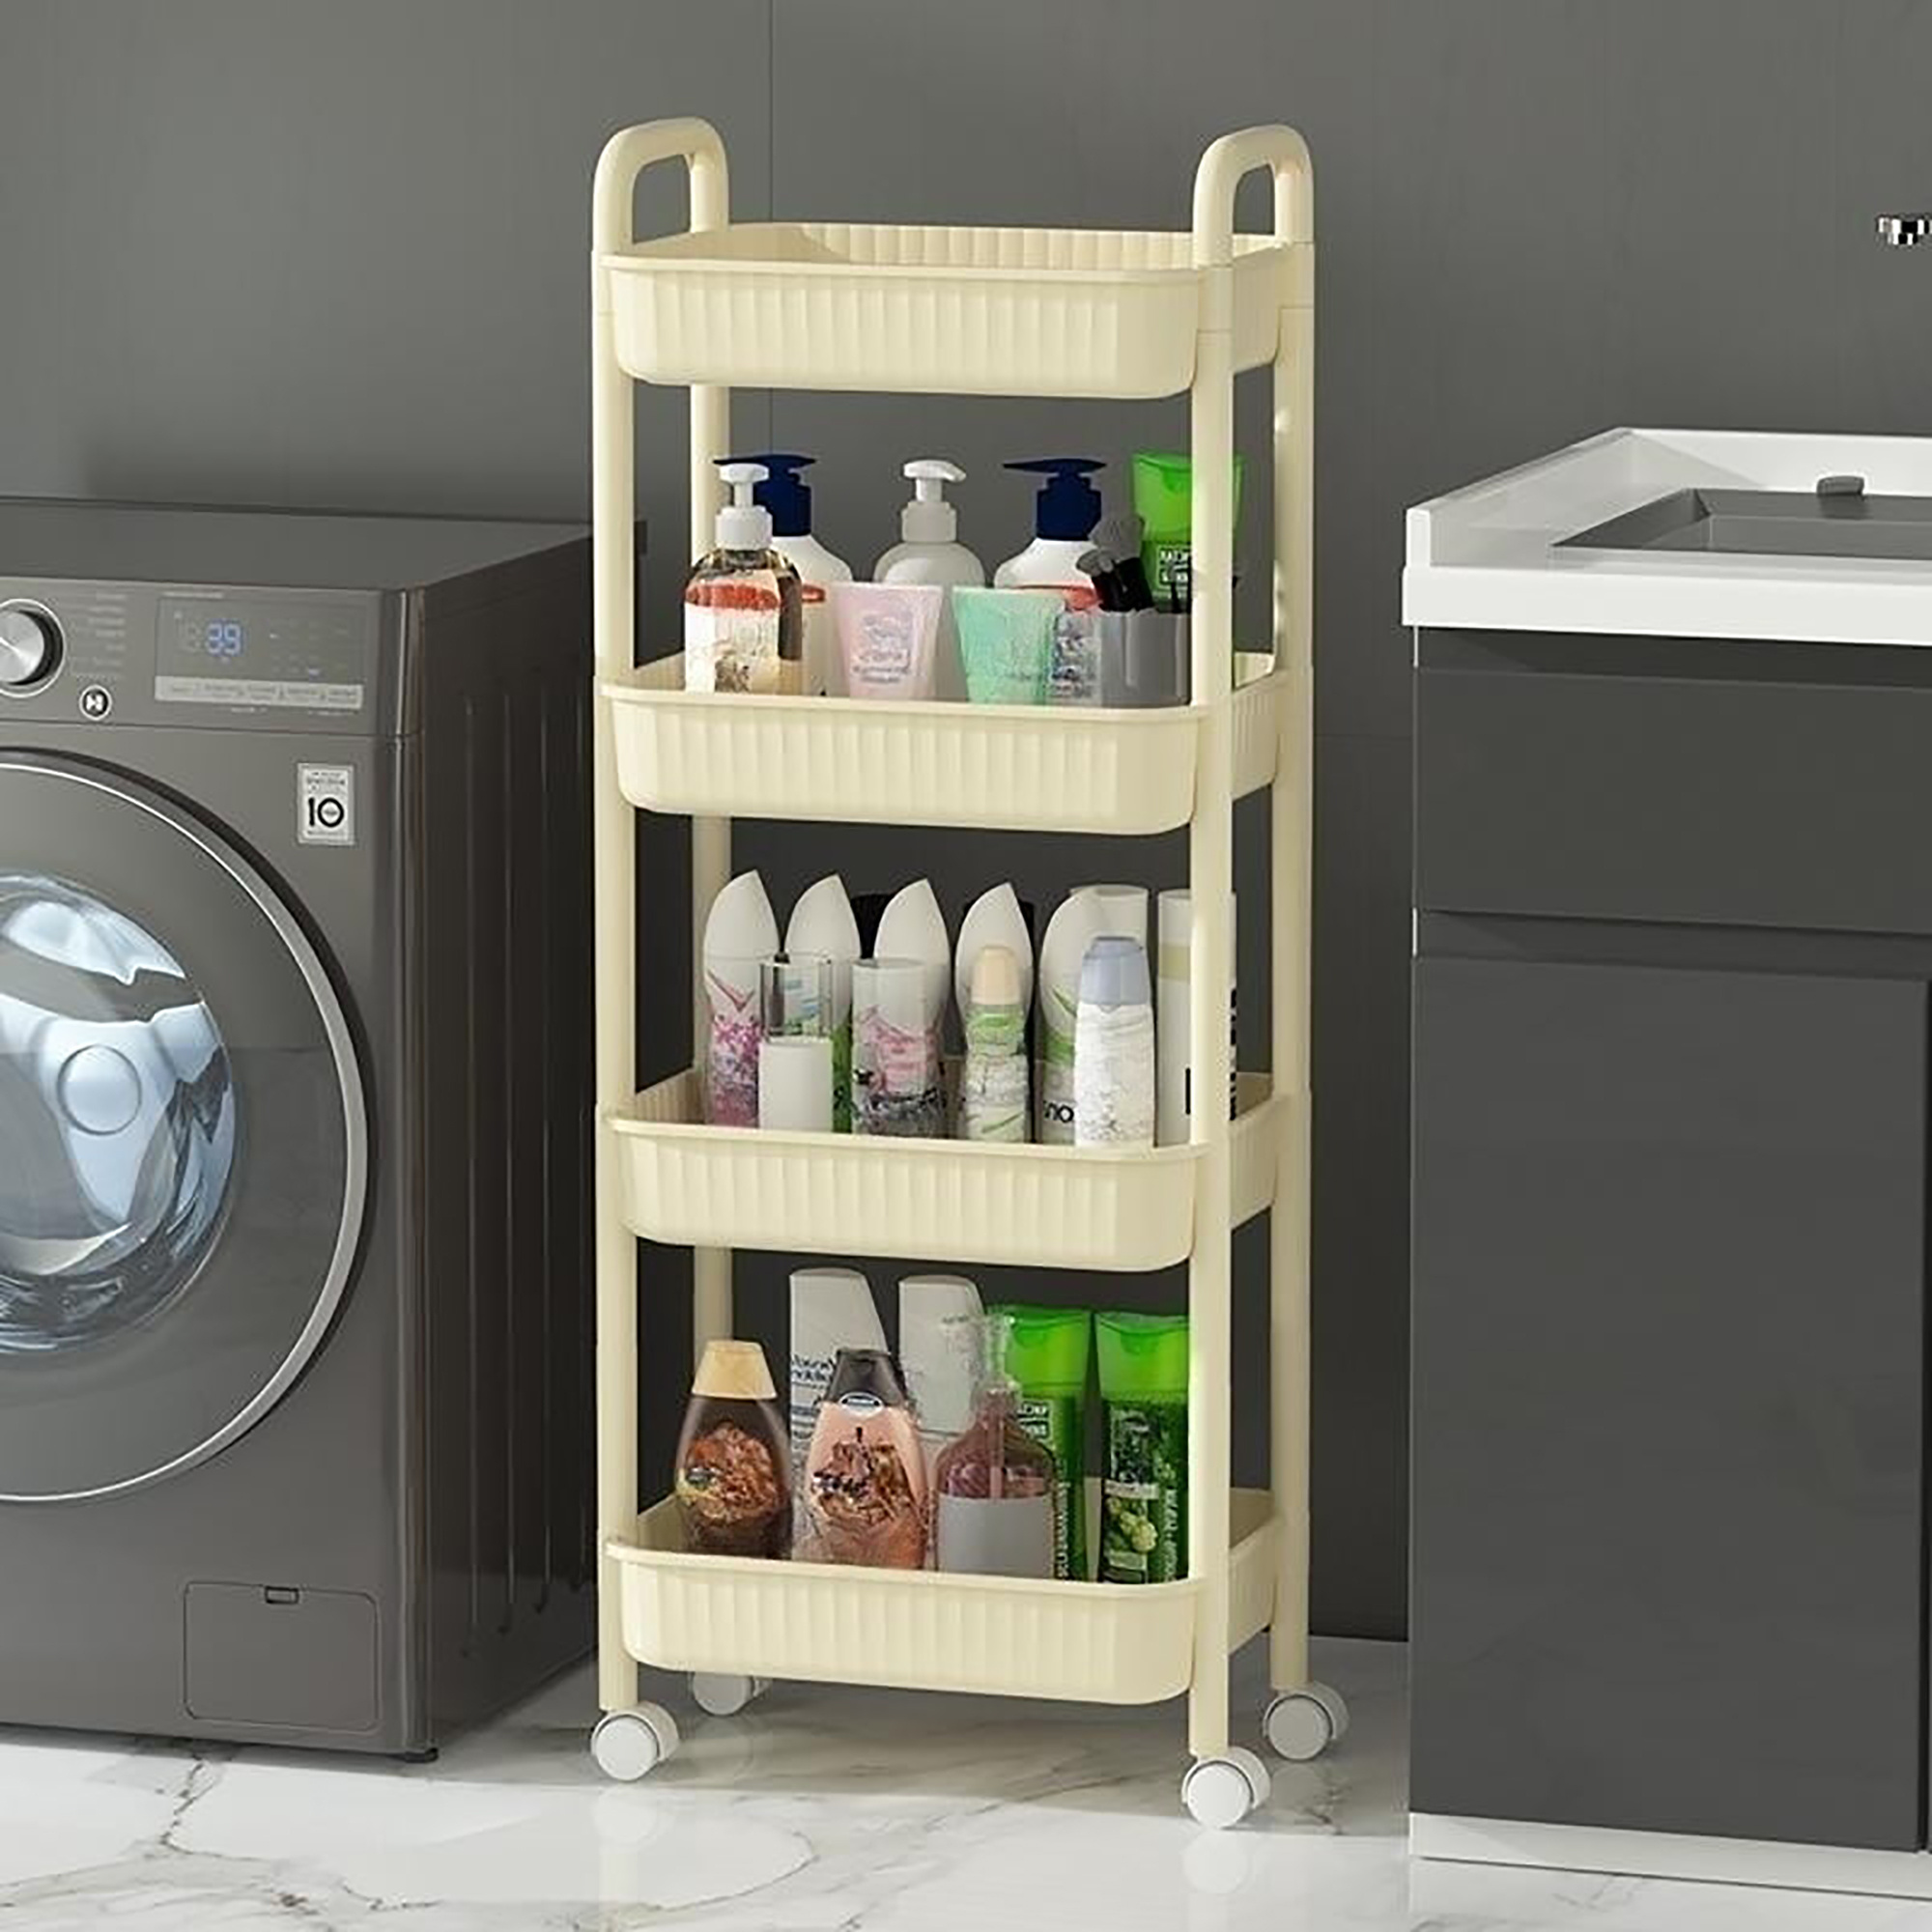 Estantes para lavadora y secadora, estantes de 5 niveles para lavandería,  estante resistente para lavadora y secadora, estantes independientes para